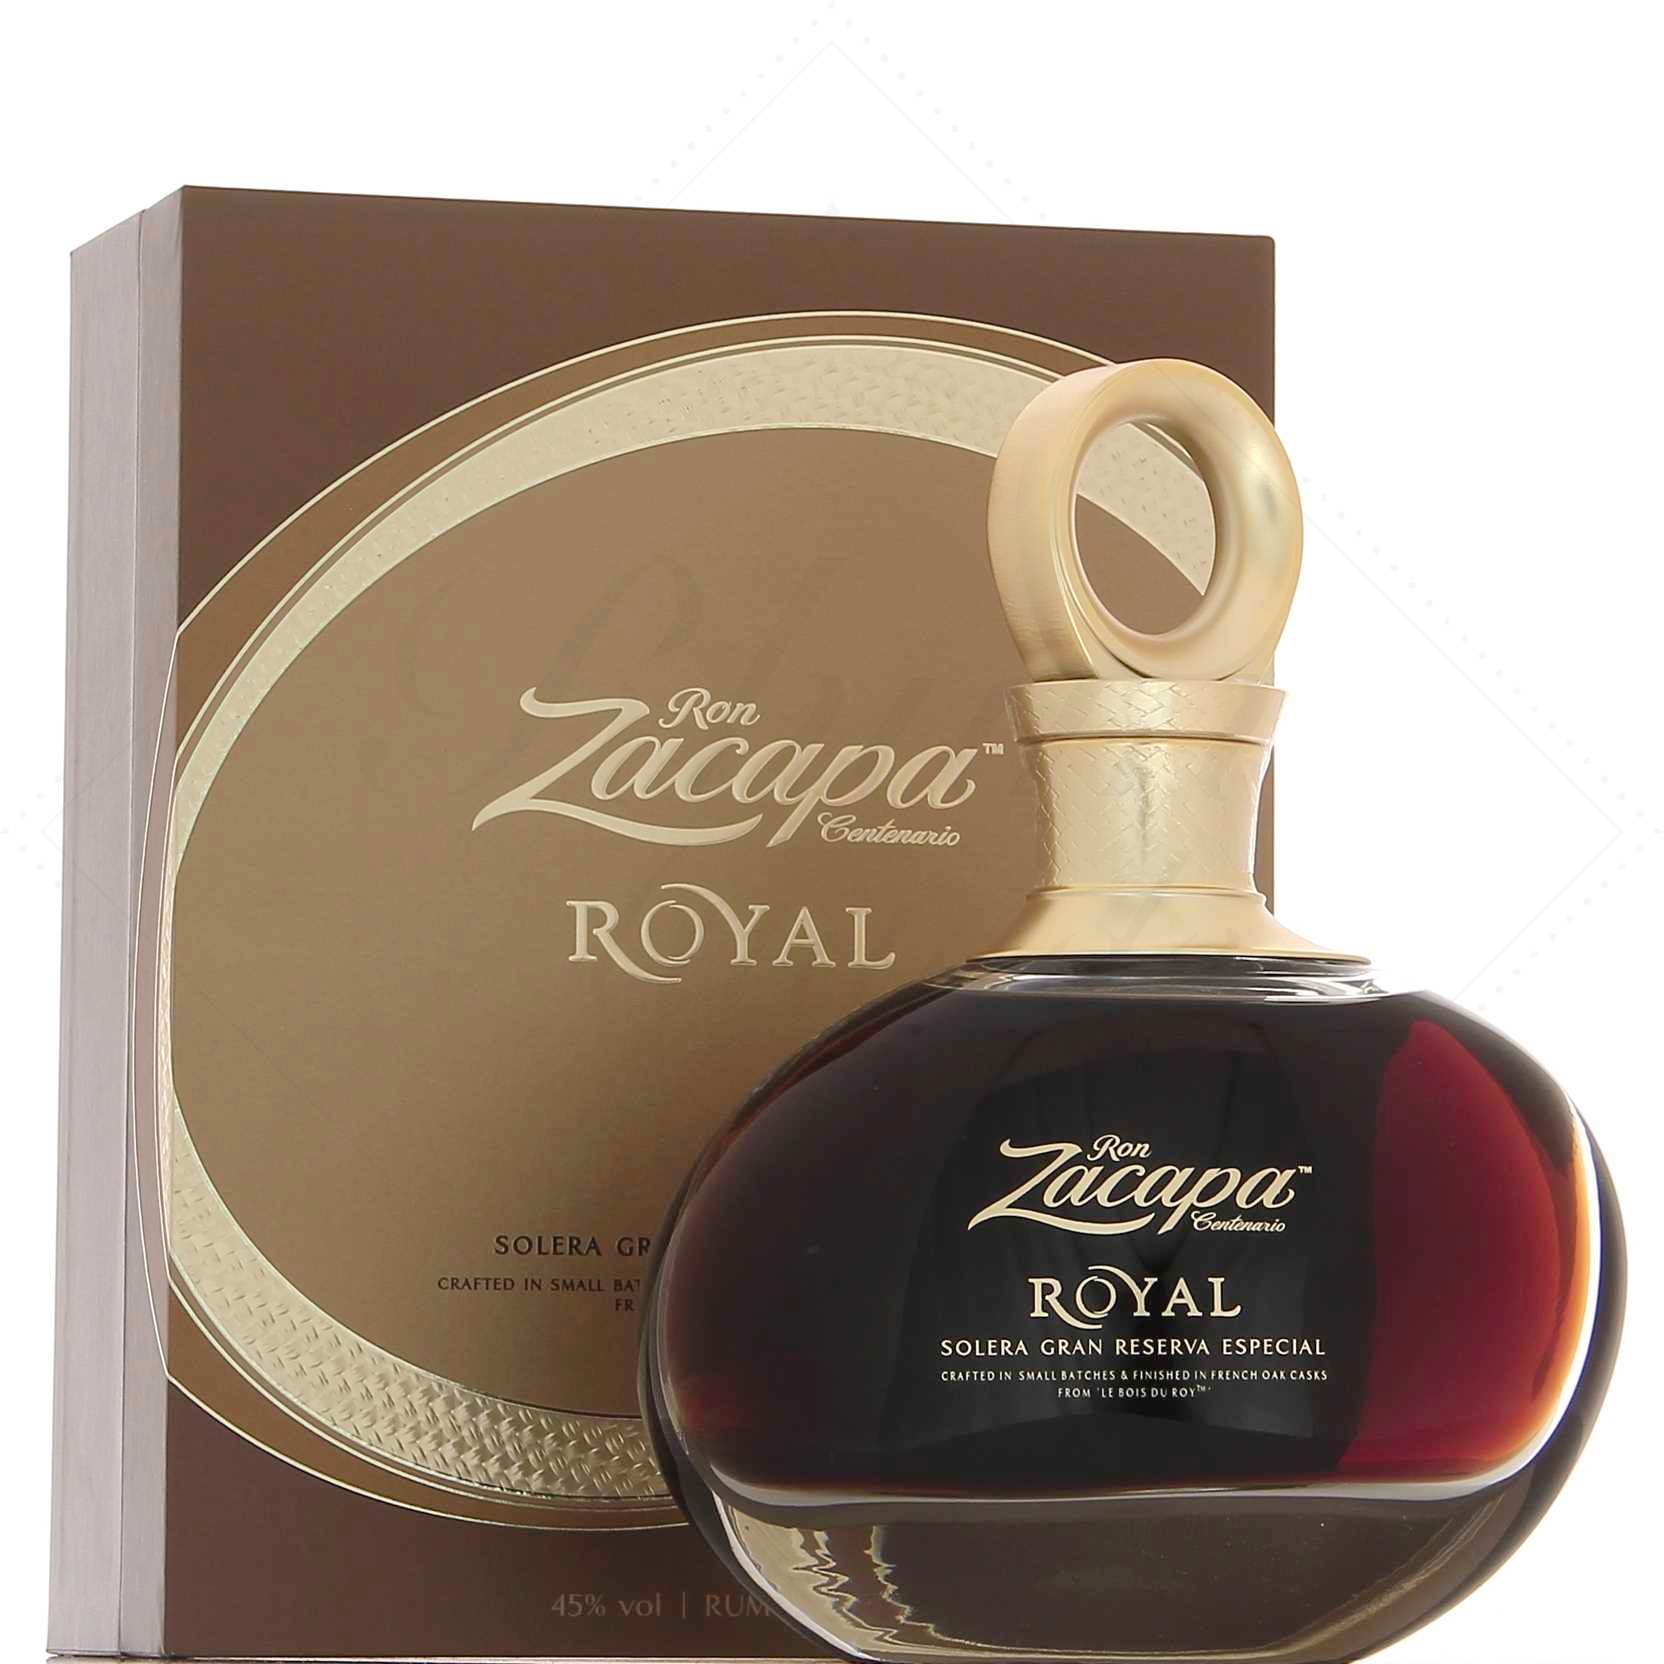 Acheter le Rhum Zacapa royal au meilleur prix du net !